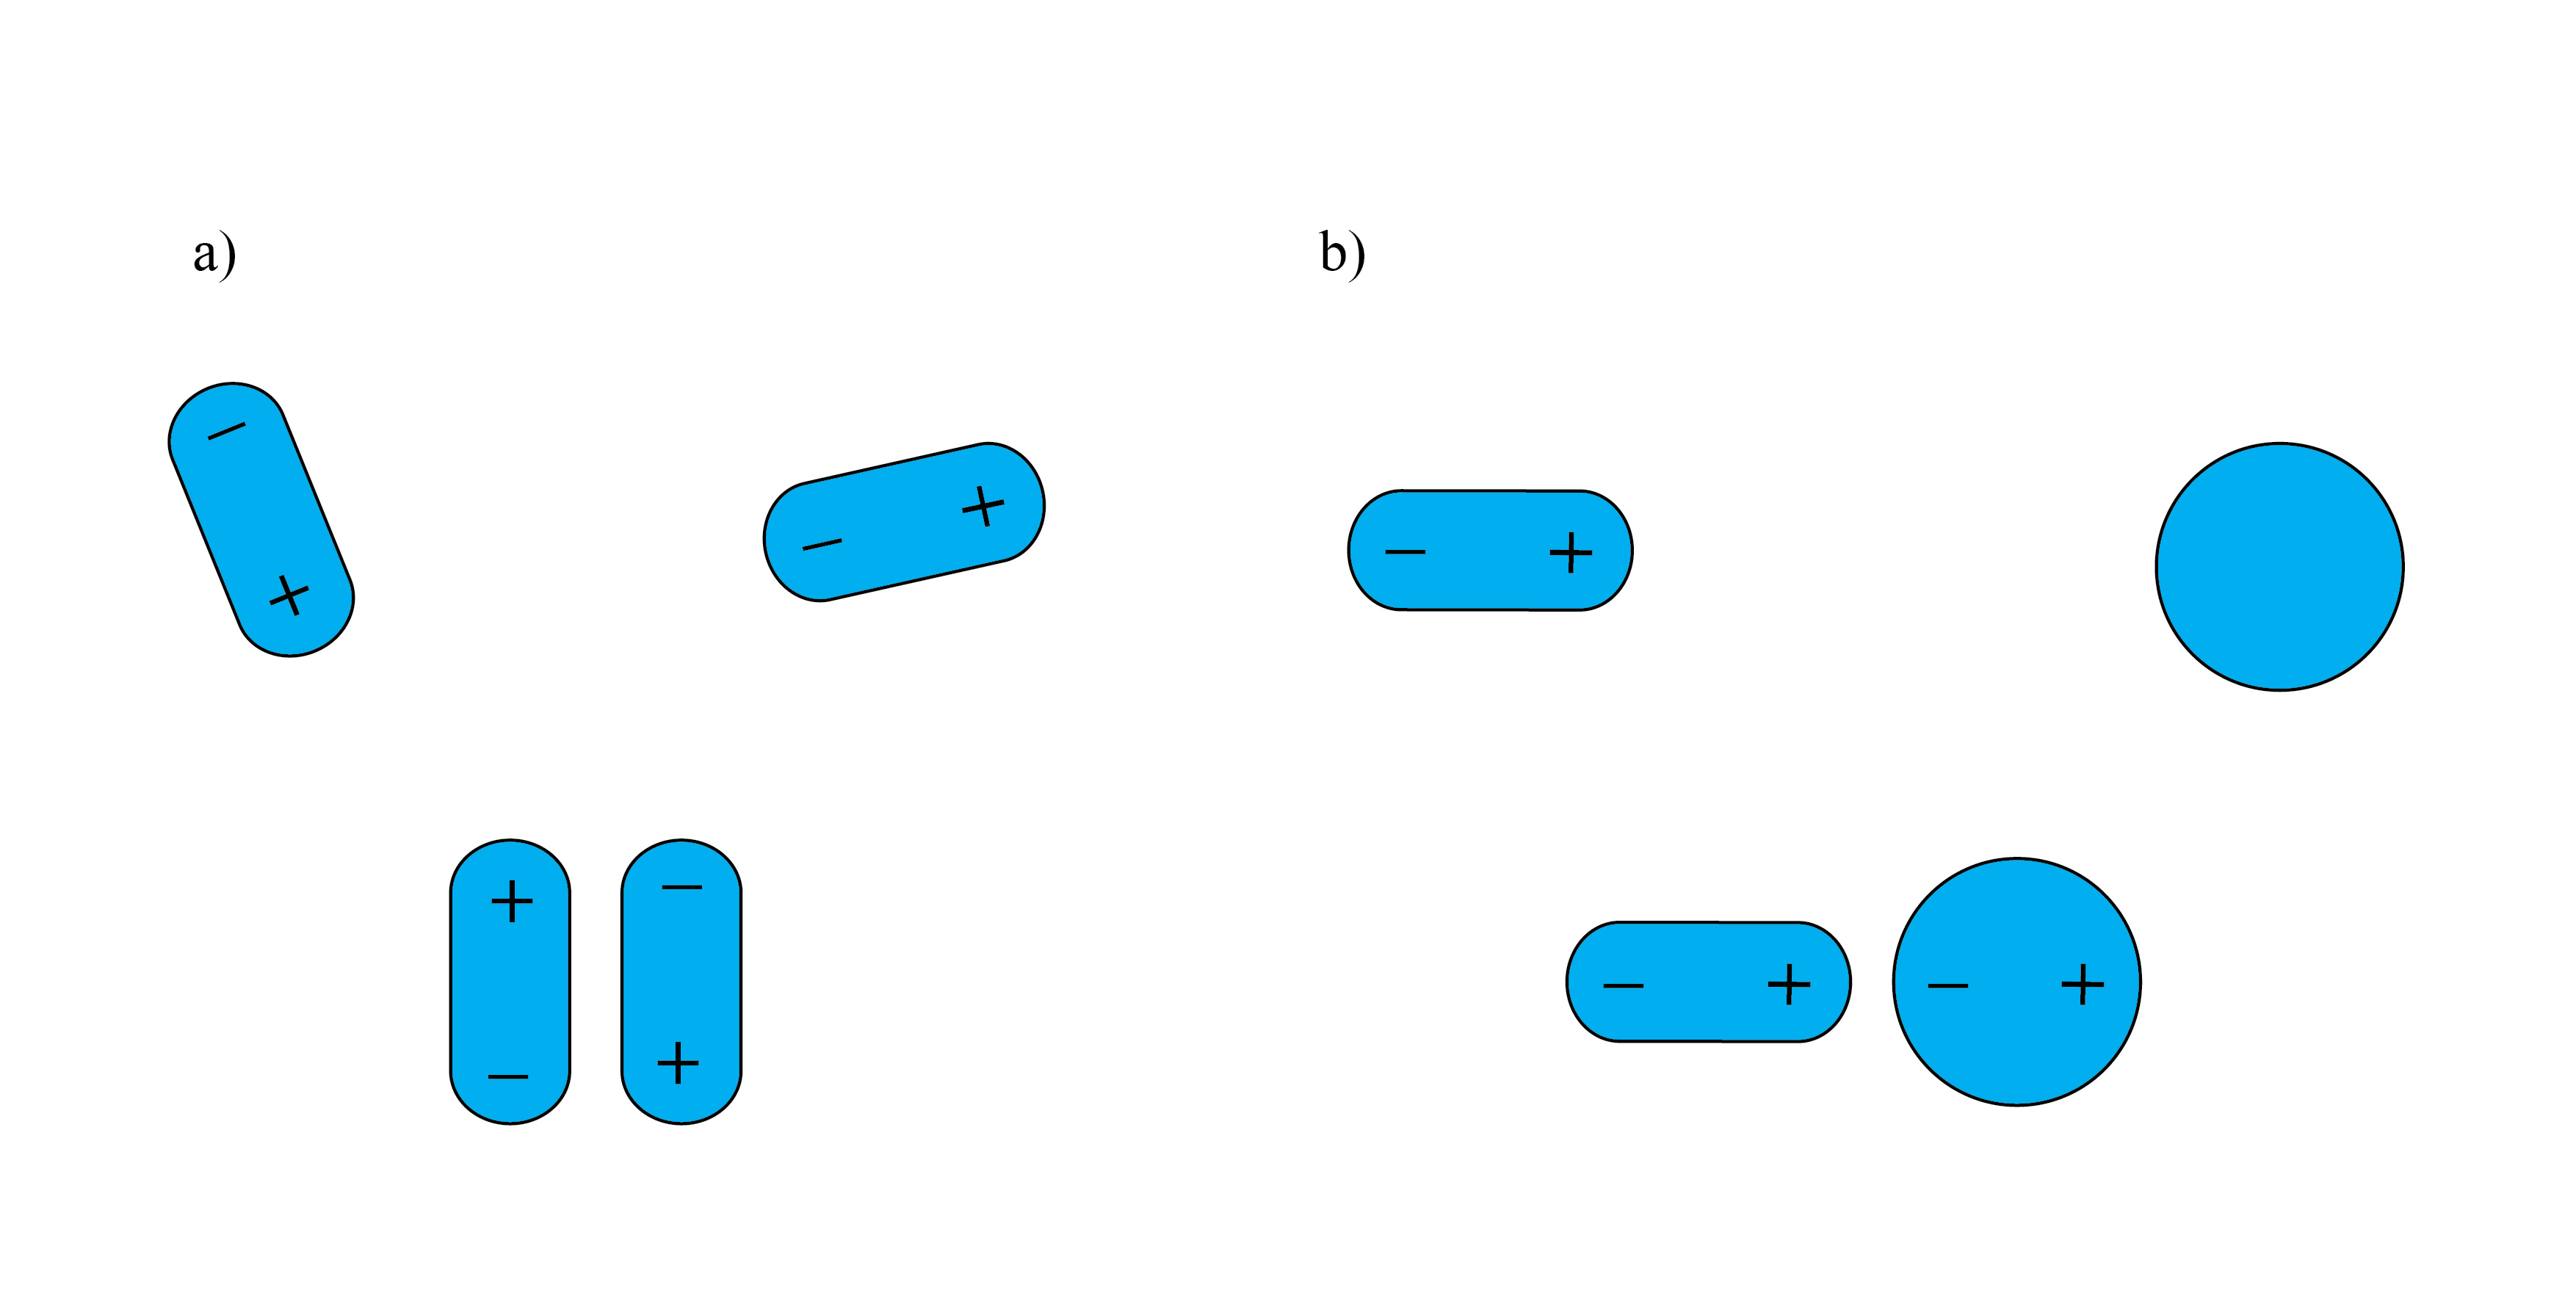 Schemat oddziaływania: a) dipol trwały-dipol trwały, b) dipol trwały-dipol wzbudzony.